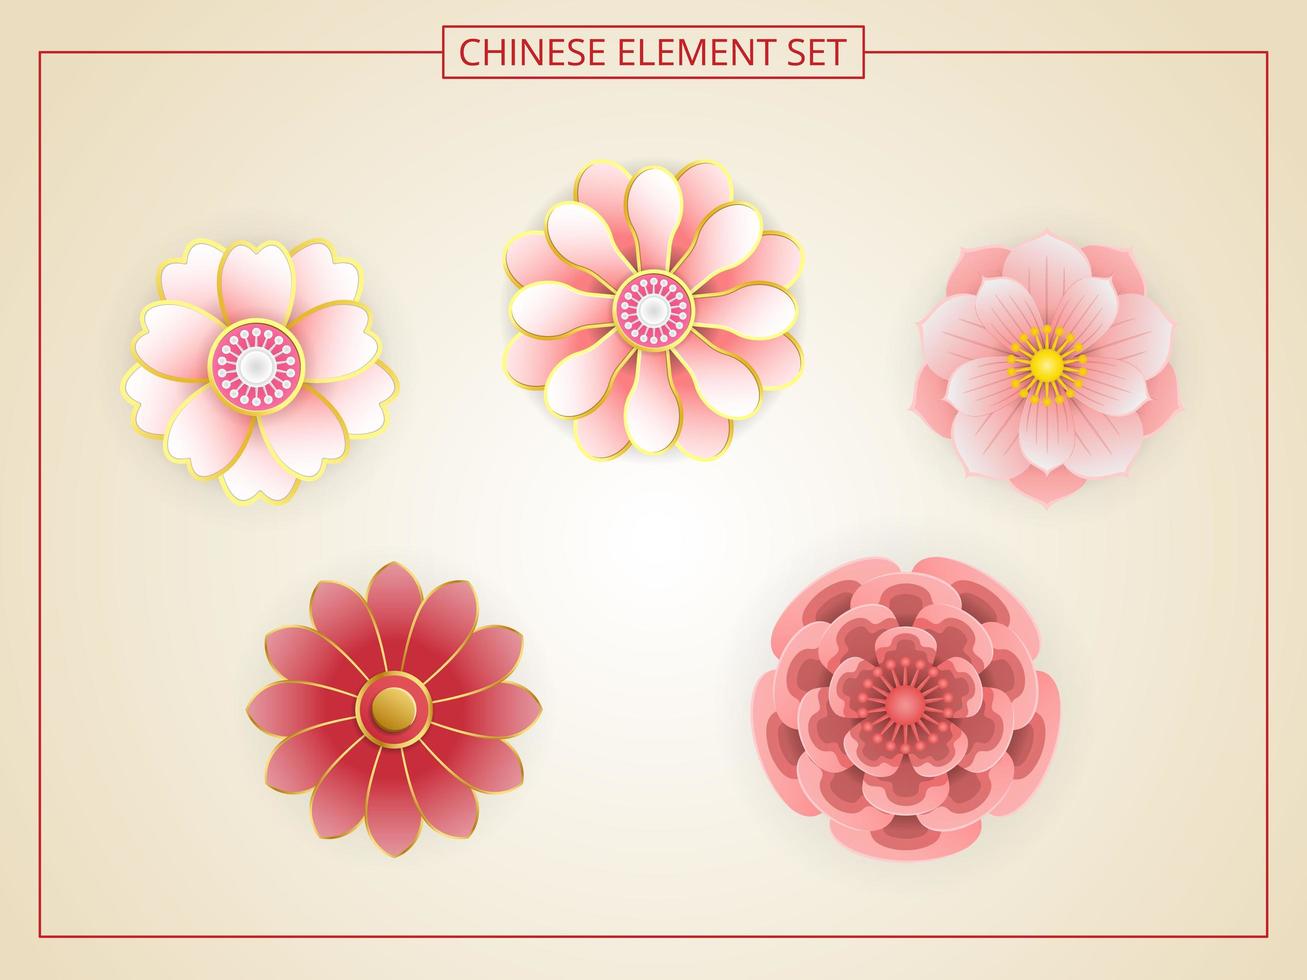 fiori cinesi con colore rosa in stile taglio carta vettore